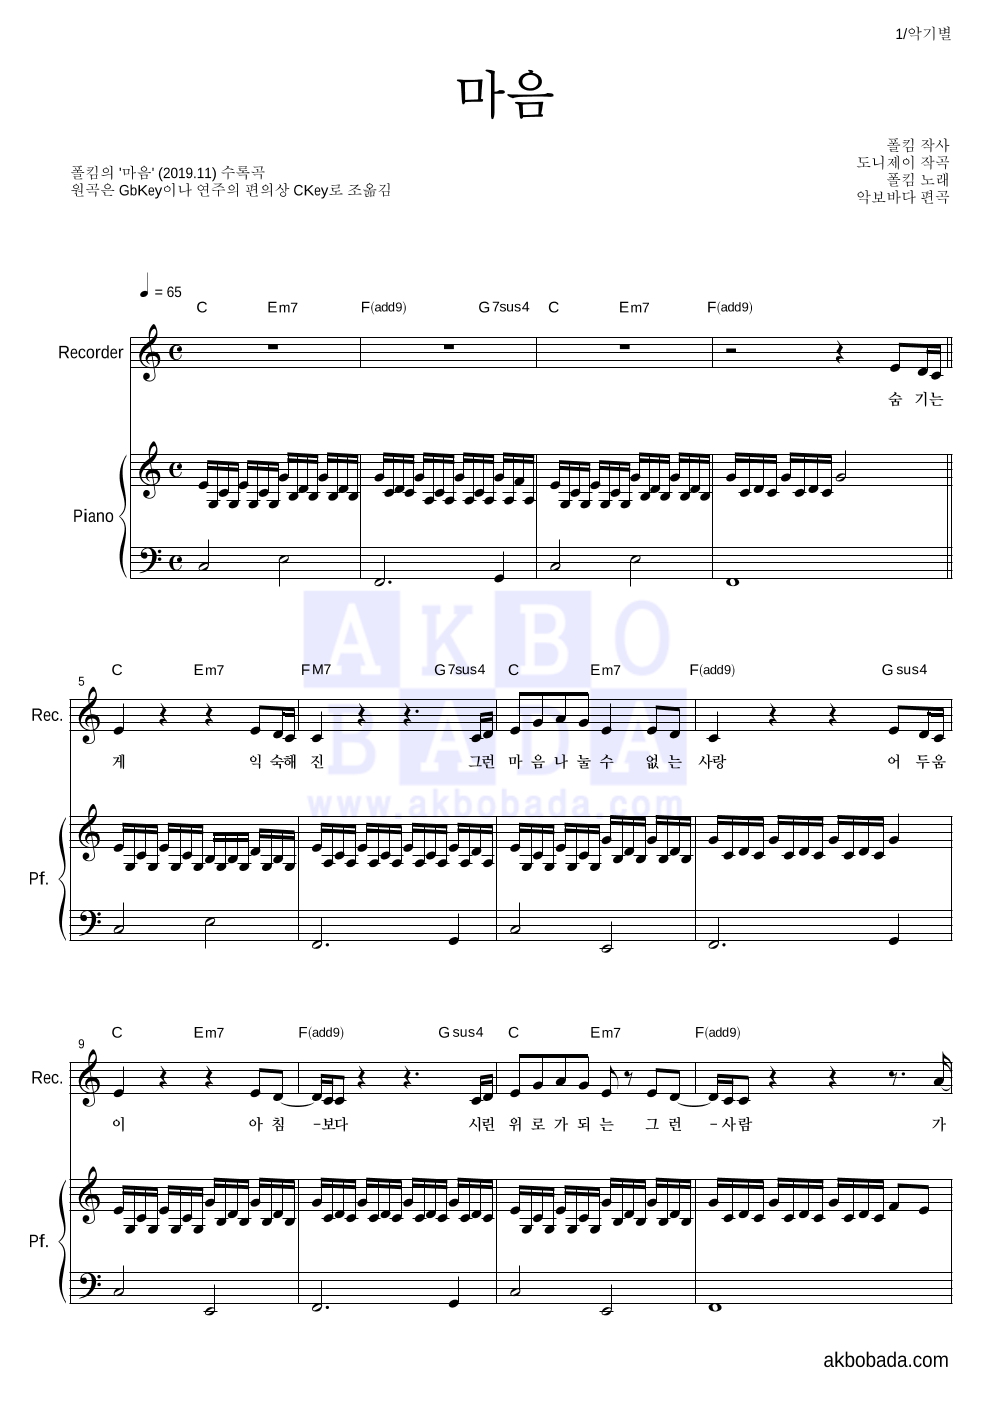 폴킴 - 마음 리코더&피아노 악보 